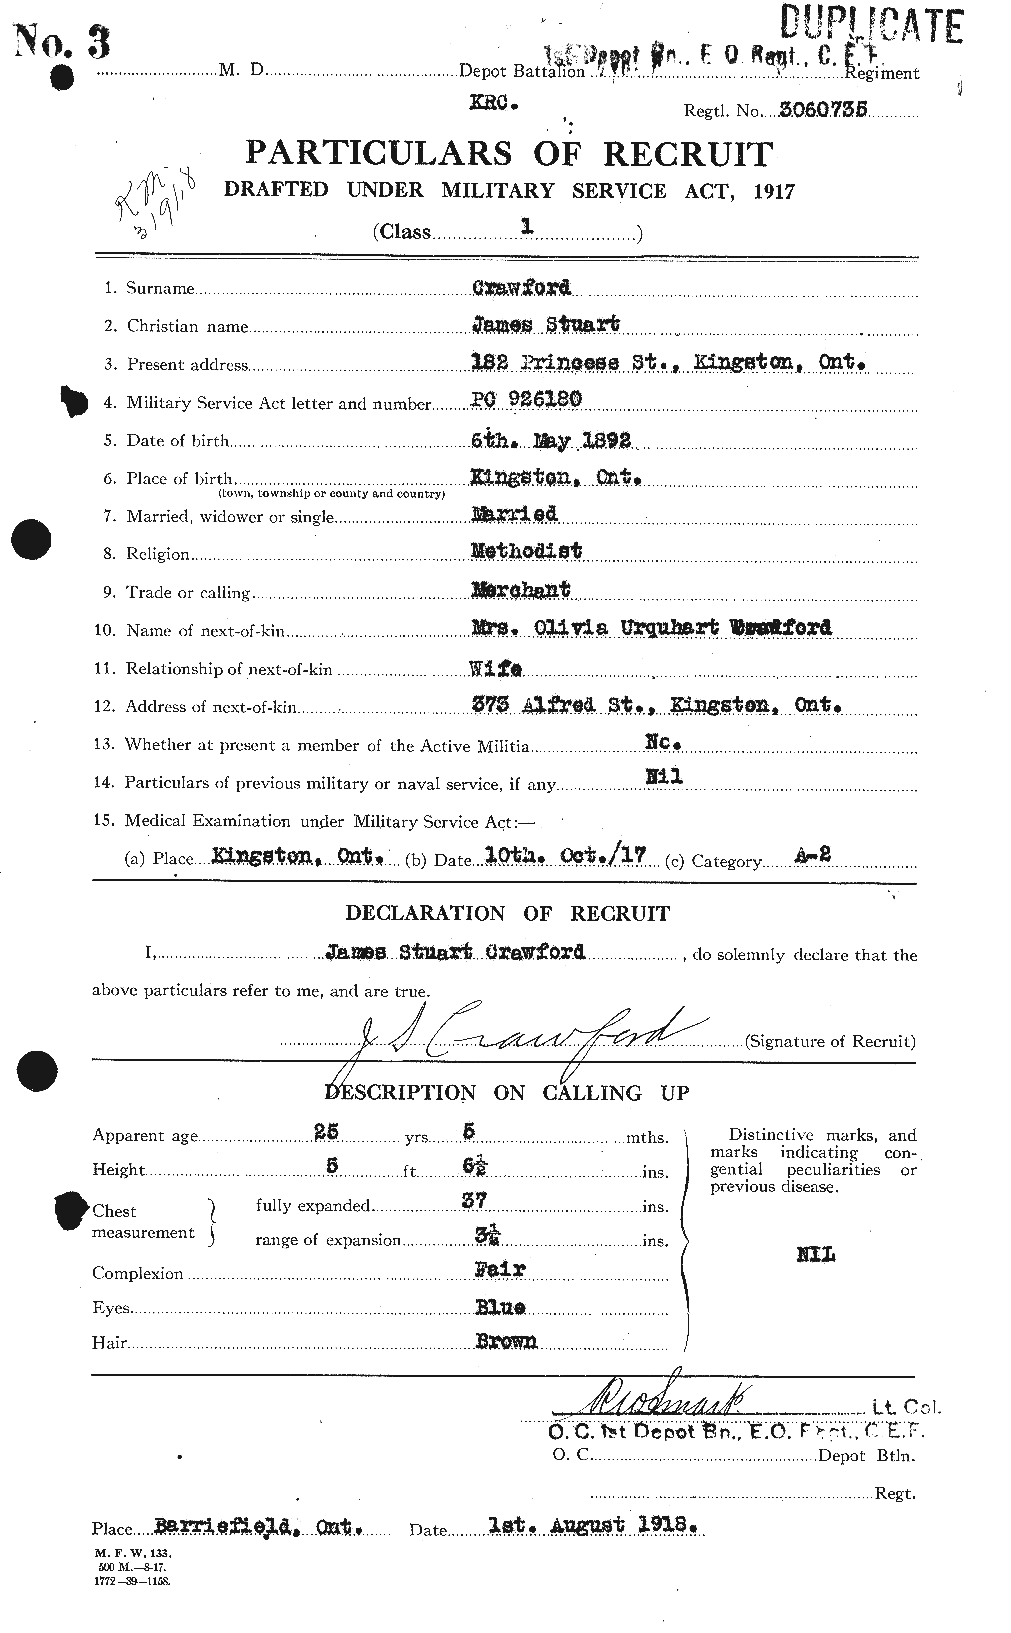 Dossiers du Personnel de la Première Guerre mondiale - CEC 062466a